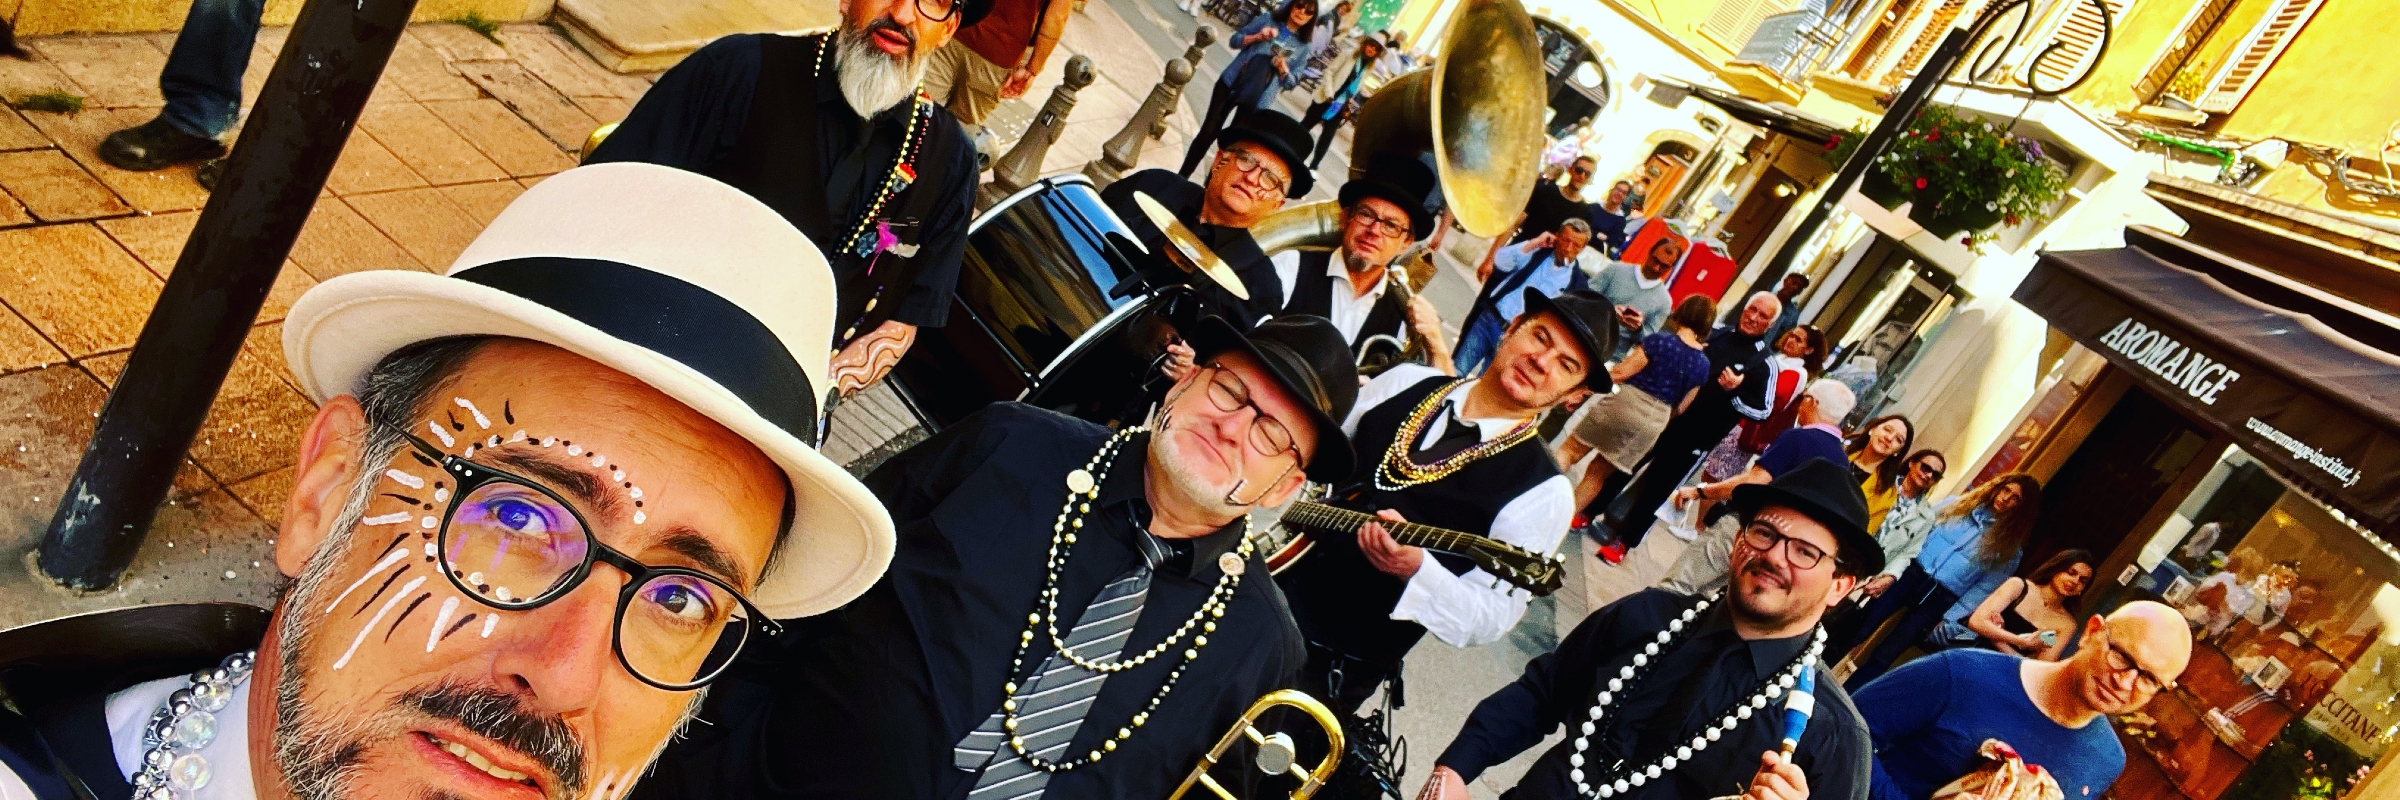 Zygos brass band, groupe de musique Jazz en représentation à Loire Atlantique - photo de couverture